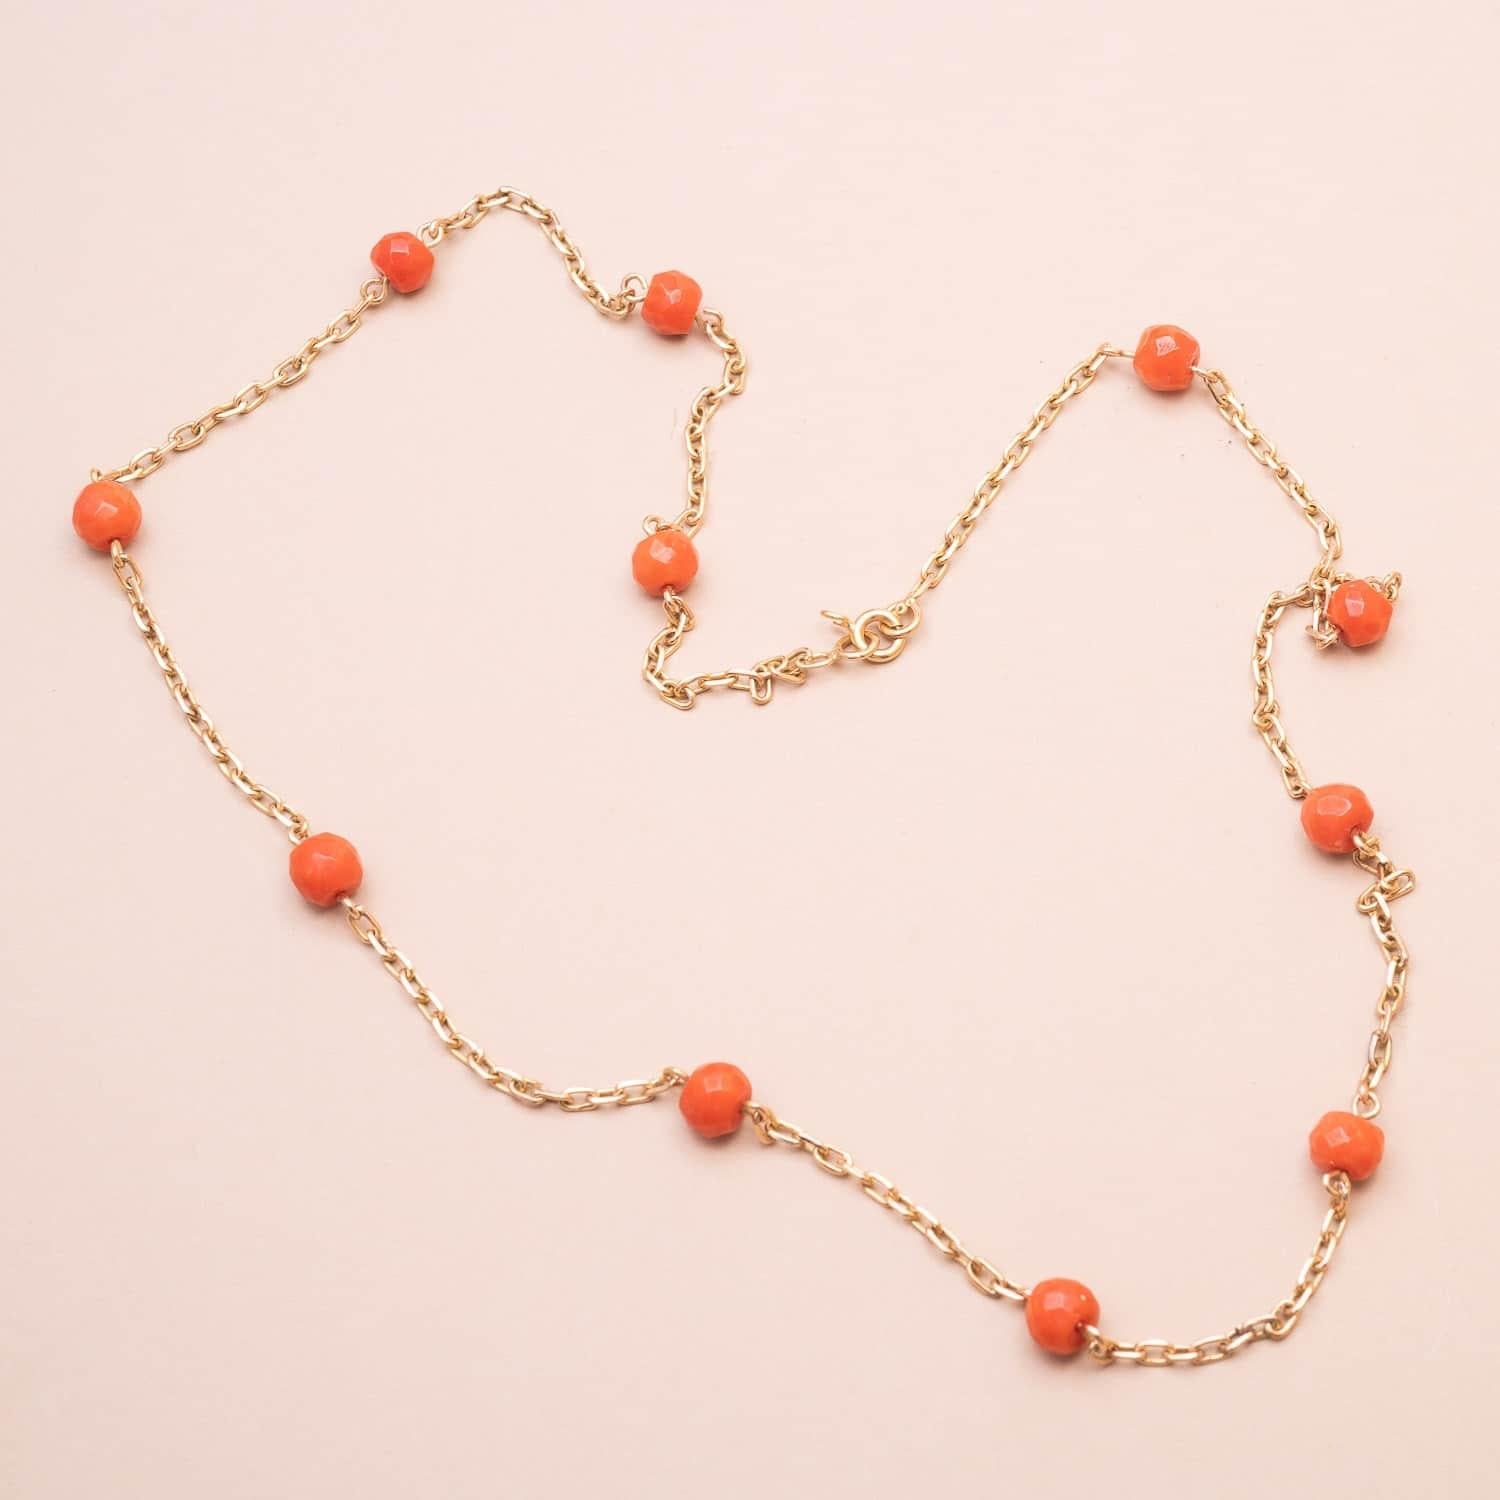 18K (750°/00) Gold Vintage Sautoir Halskette mit roten Korallenperlen aus dem Mittelmeerraum, die jeweils durch eine Kette getrennt sind. 

Italienische Handwerkskunst aus den siebziger Jahren 

Runde Schließe 

Länge : 61.5cm 

Korallen Perlen